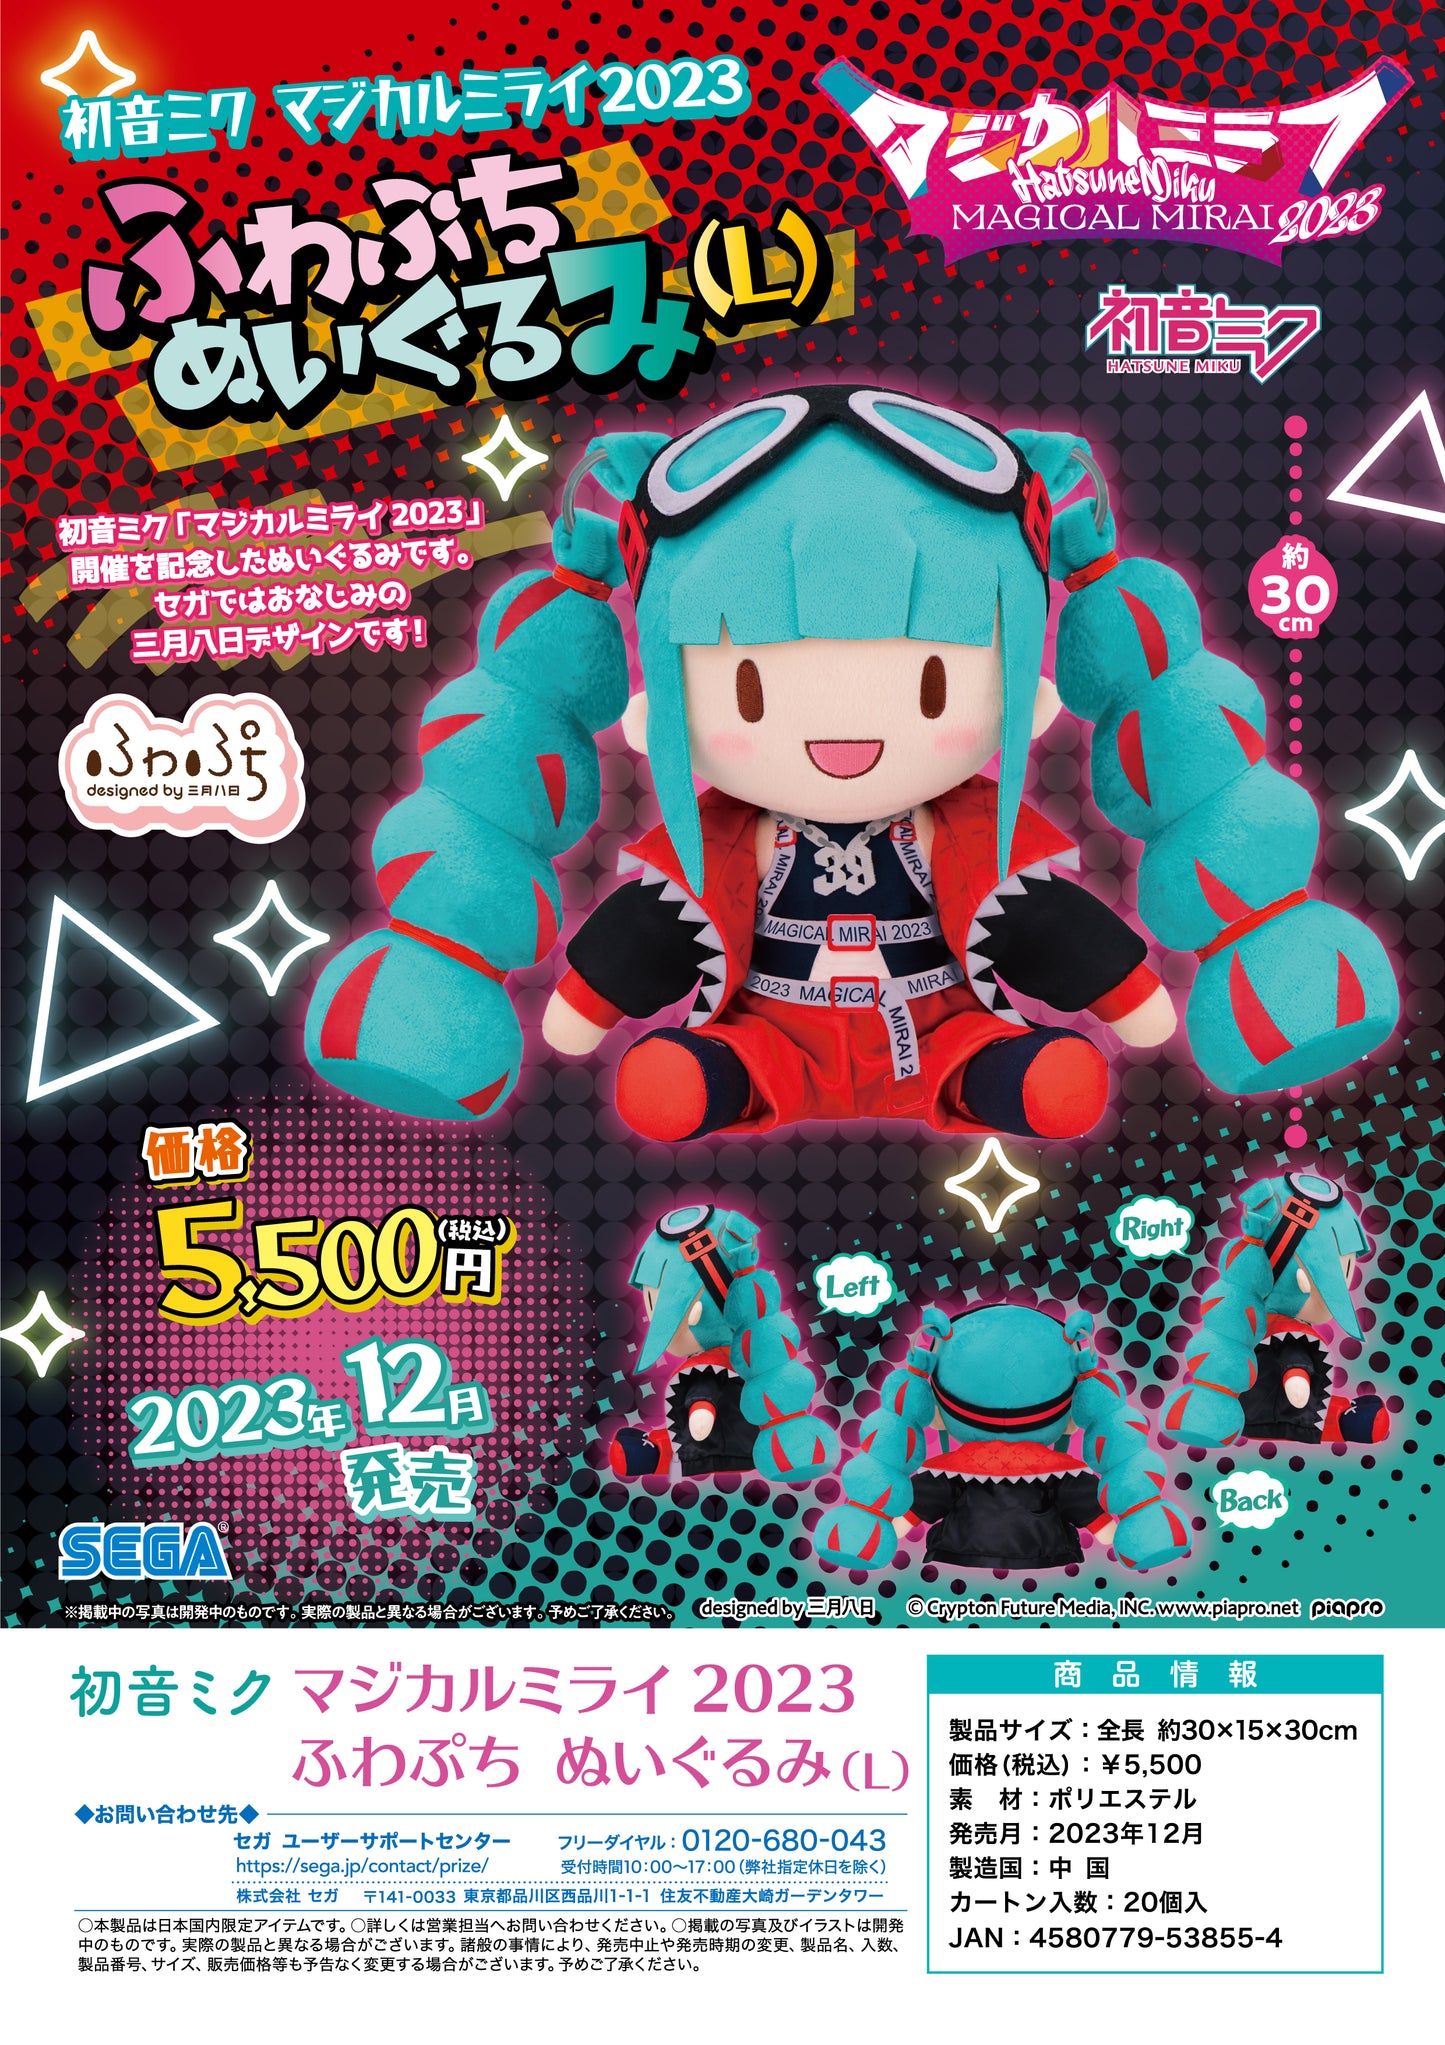 (Pre-Order) Hatsune Miku Magical Mirai 2023 Fuwa Petit Plush L